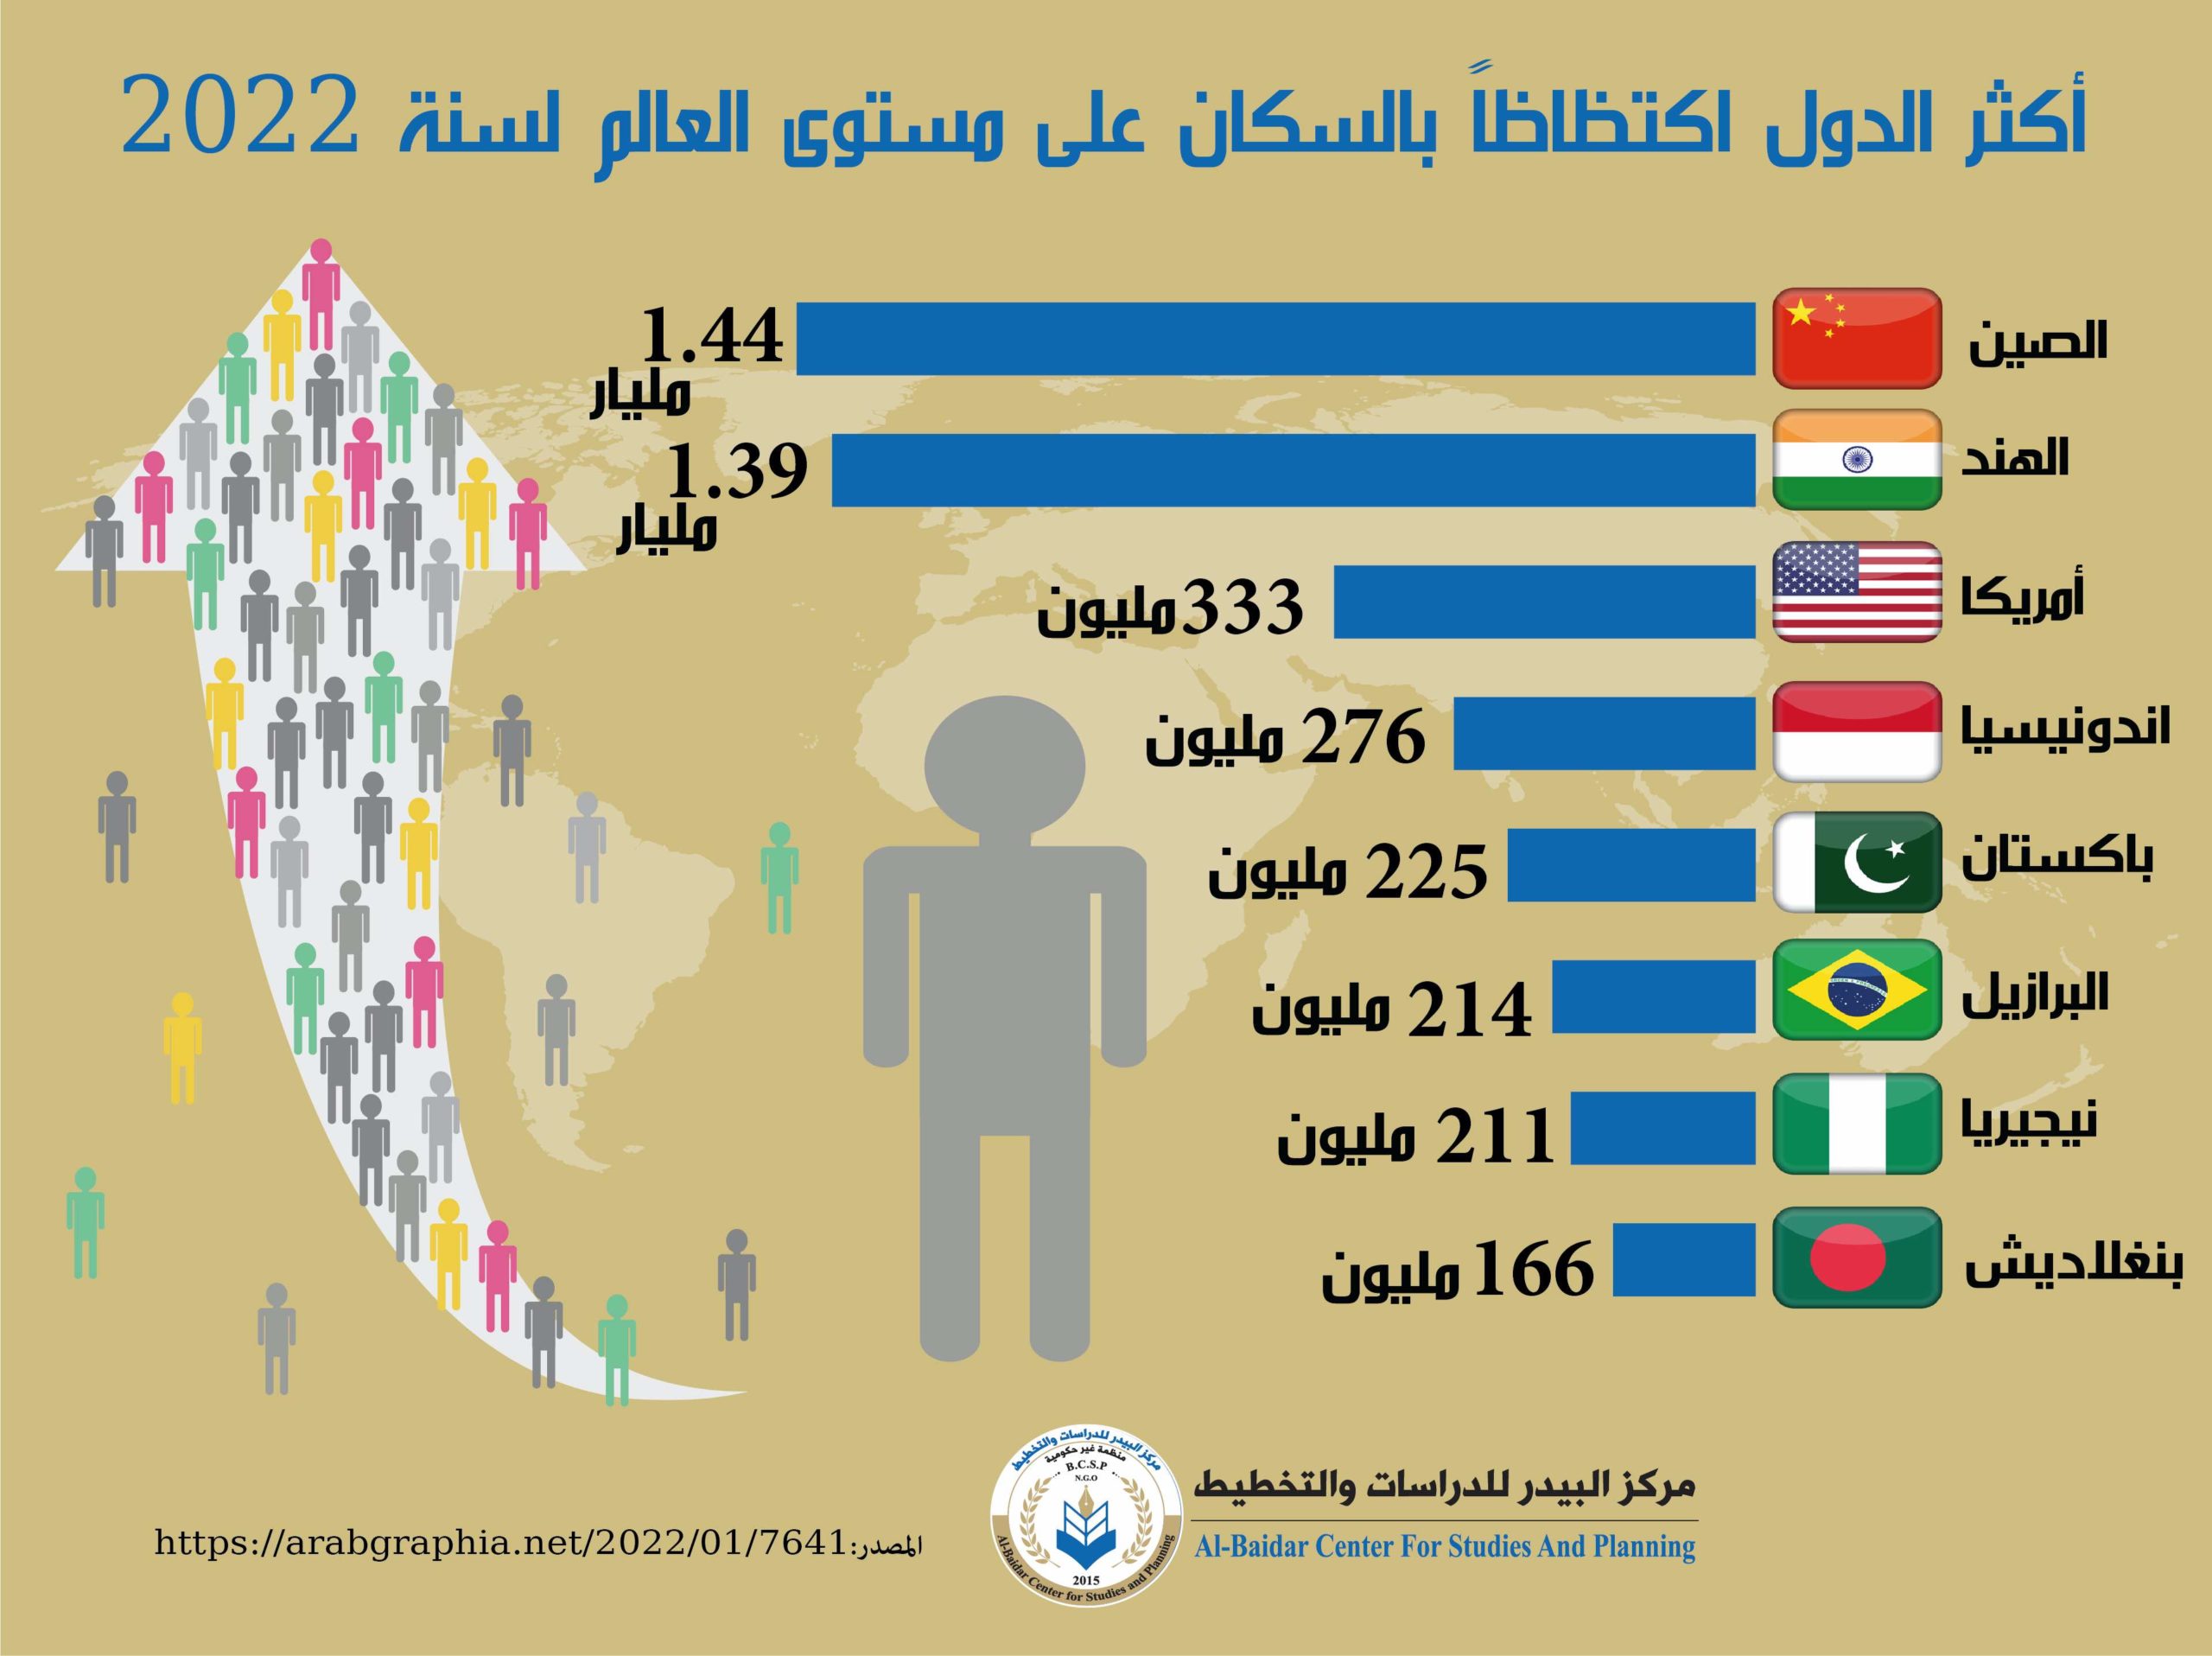 Photo of أكثر الدول زيادة في عدد السكان على مستوى العالم لسنة 2022